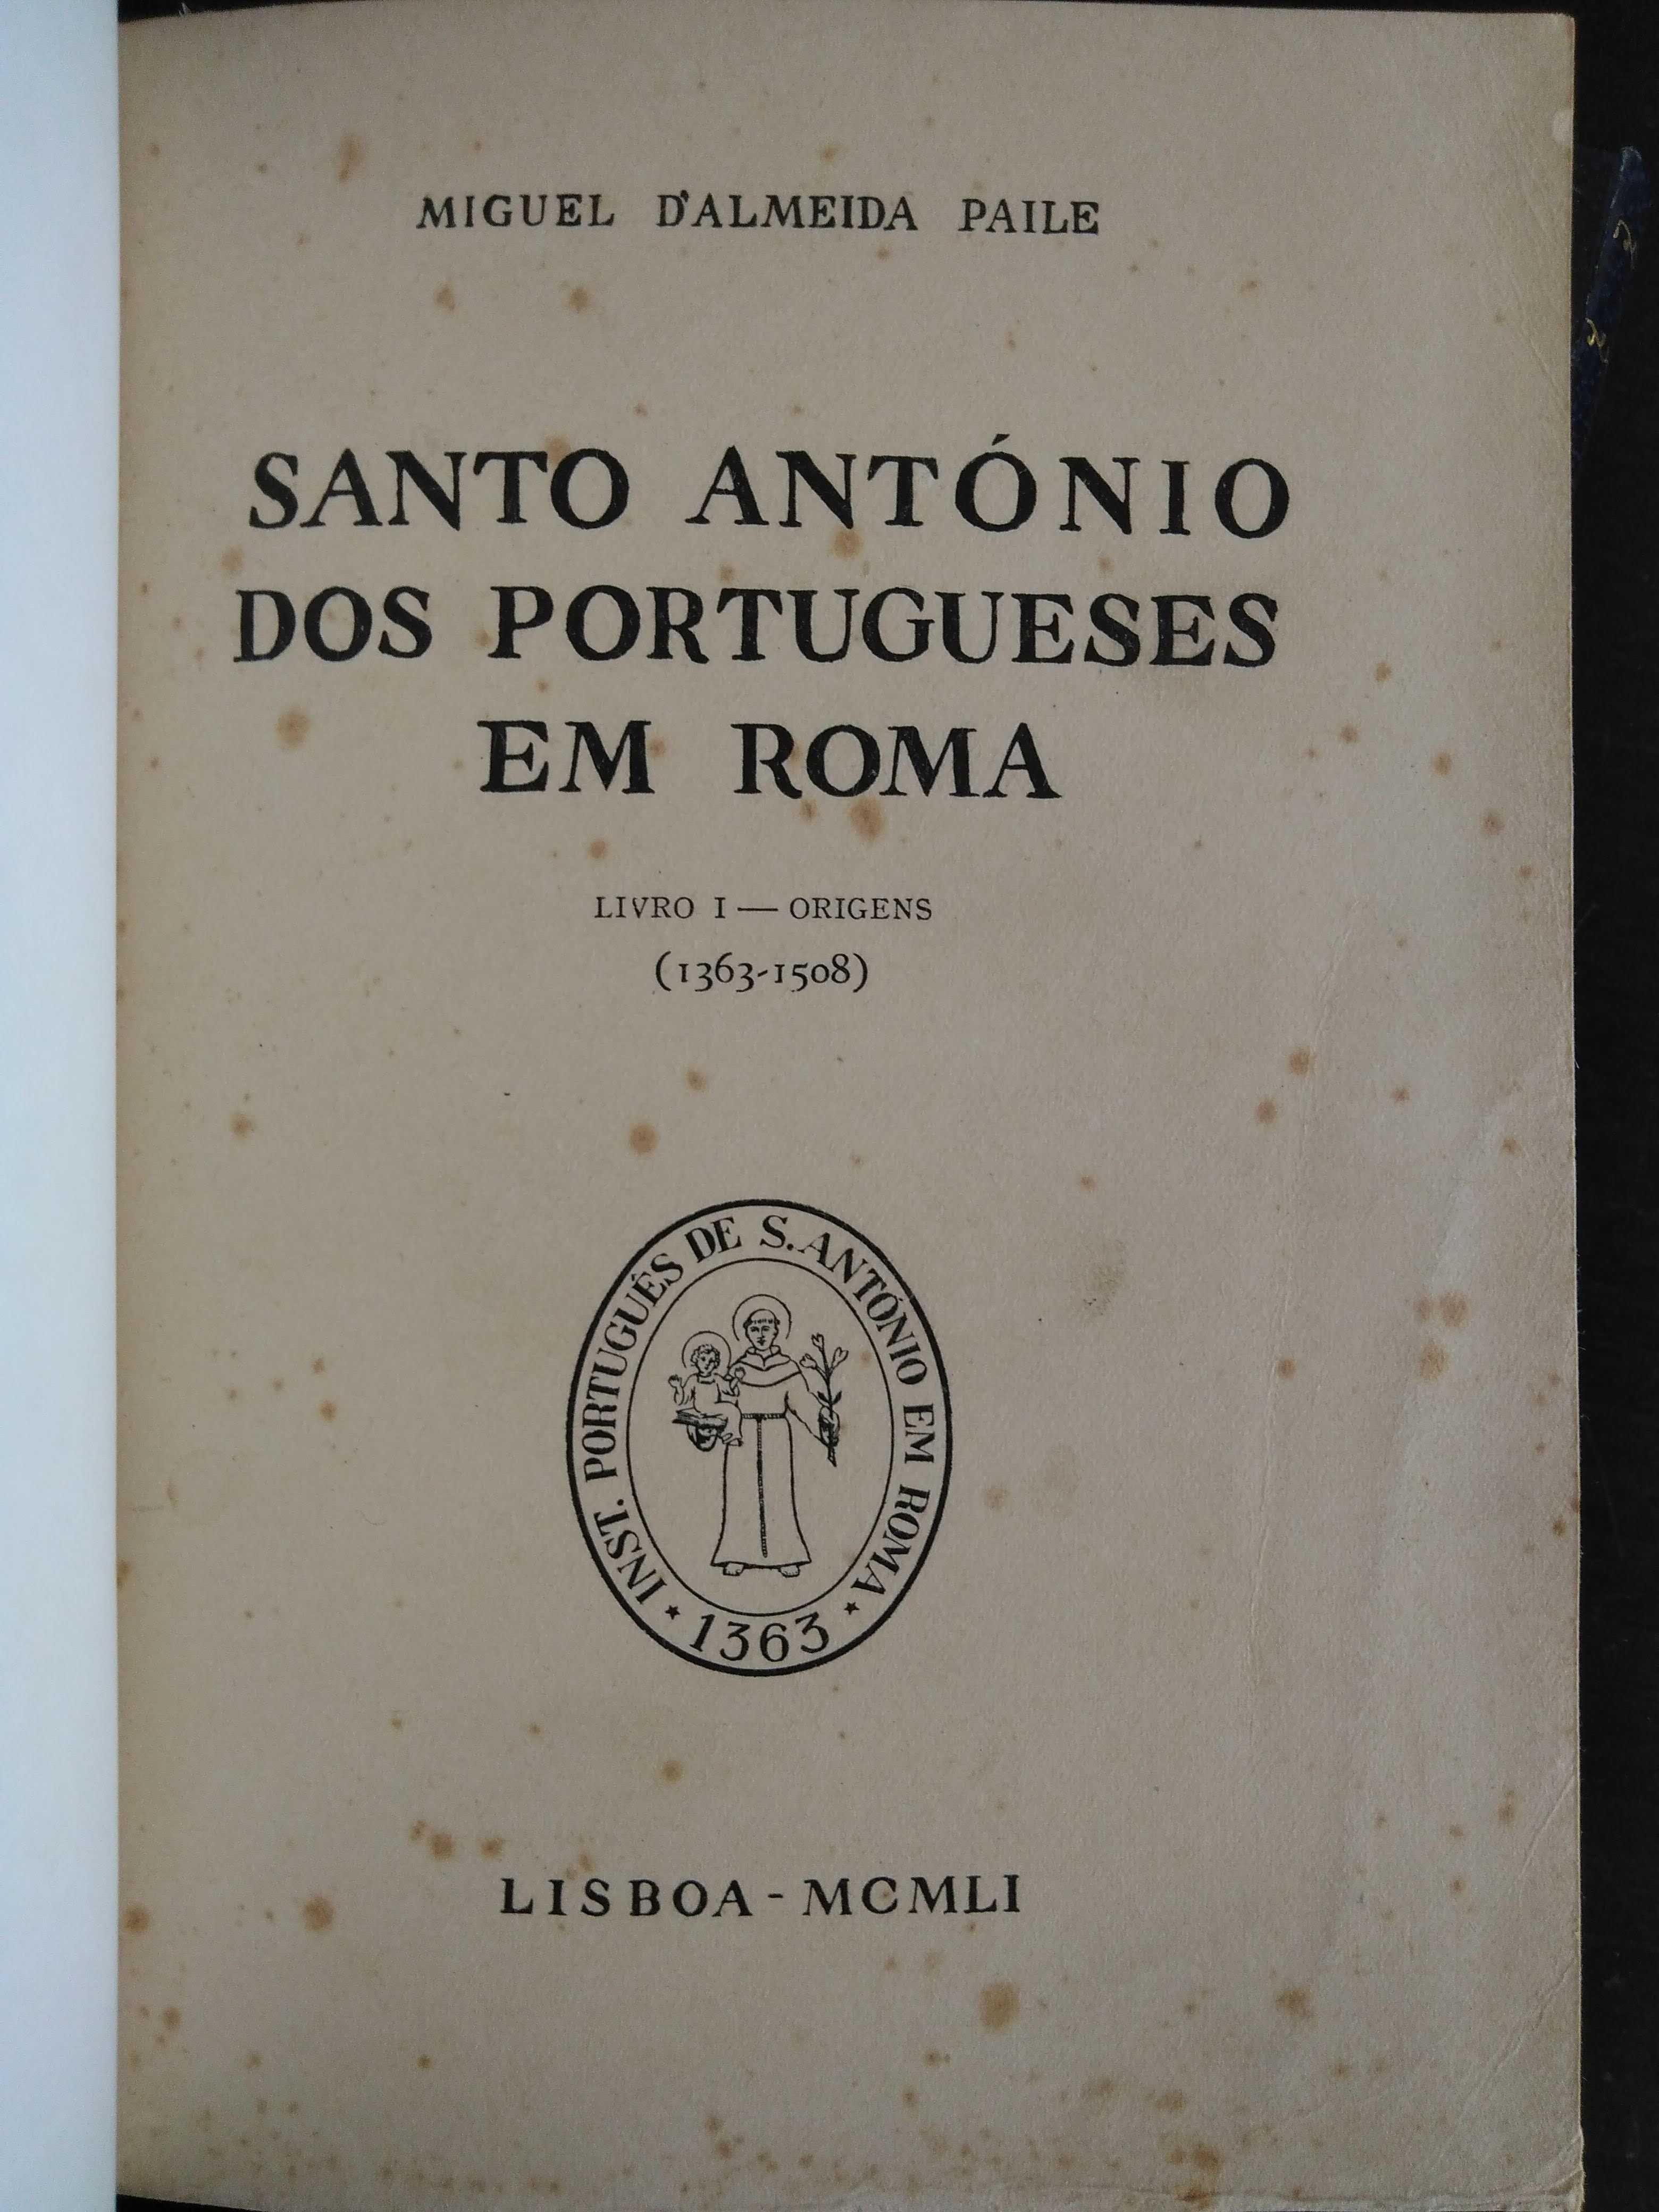 livro: Miguel d’Almeida Paile “Santo António dos portugueses em Roma”